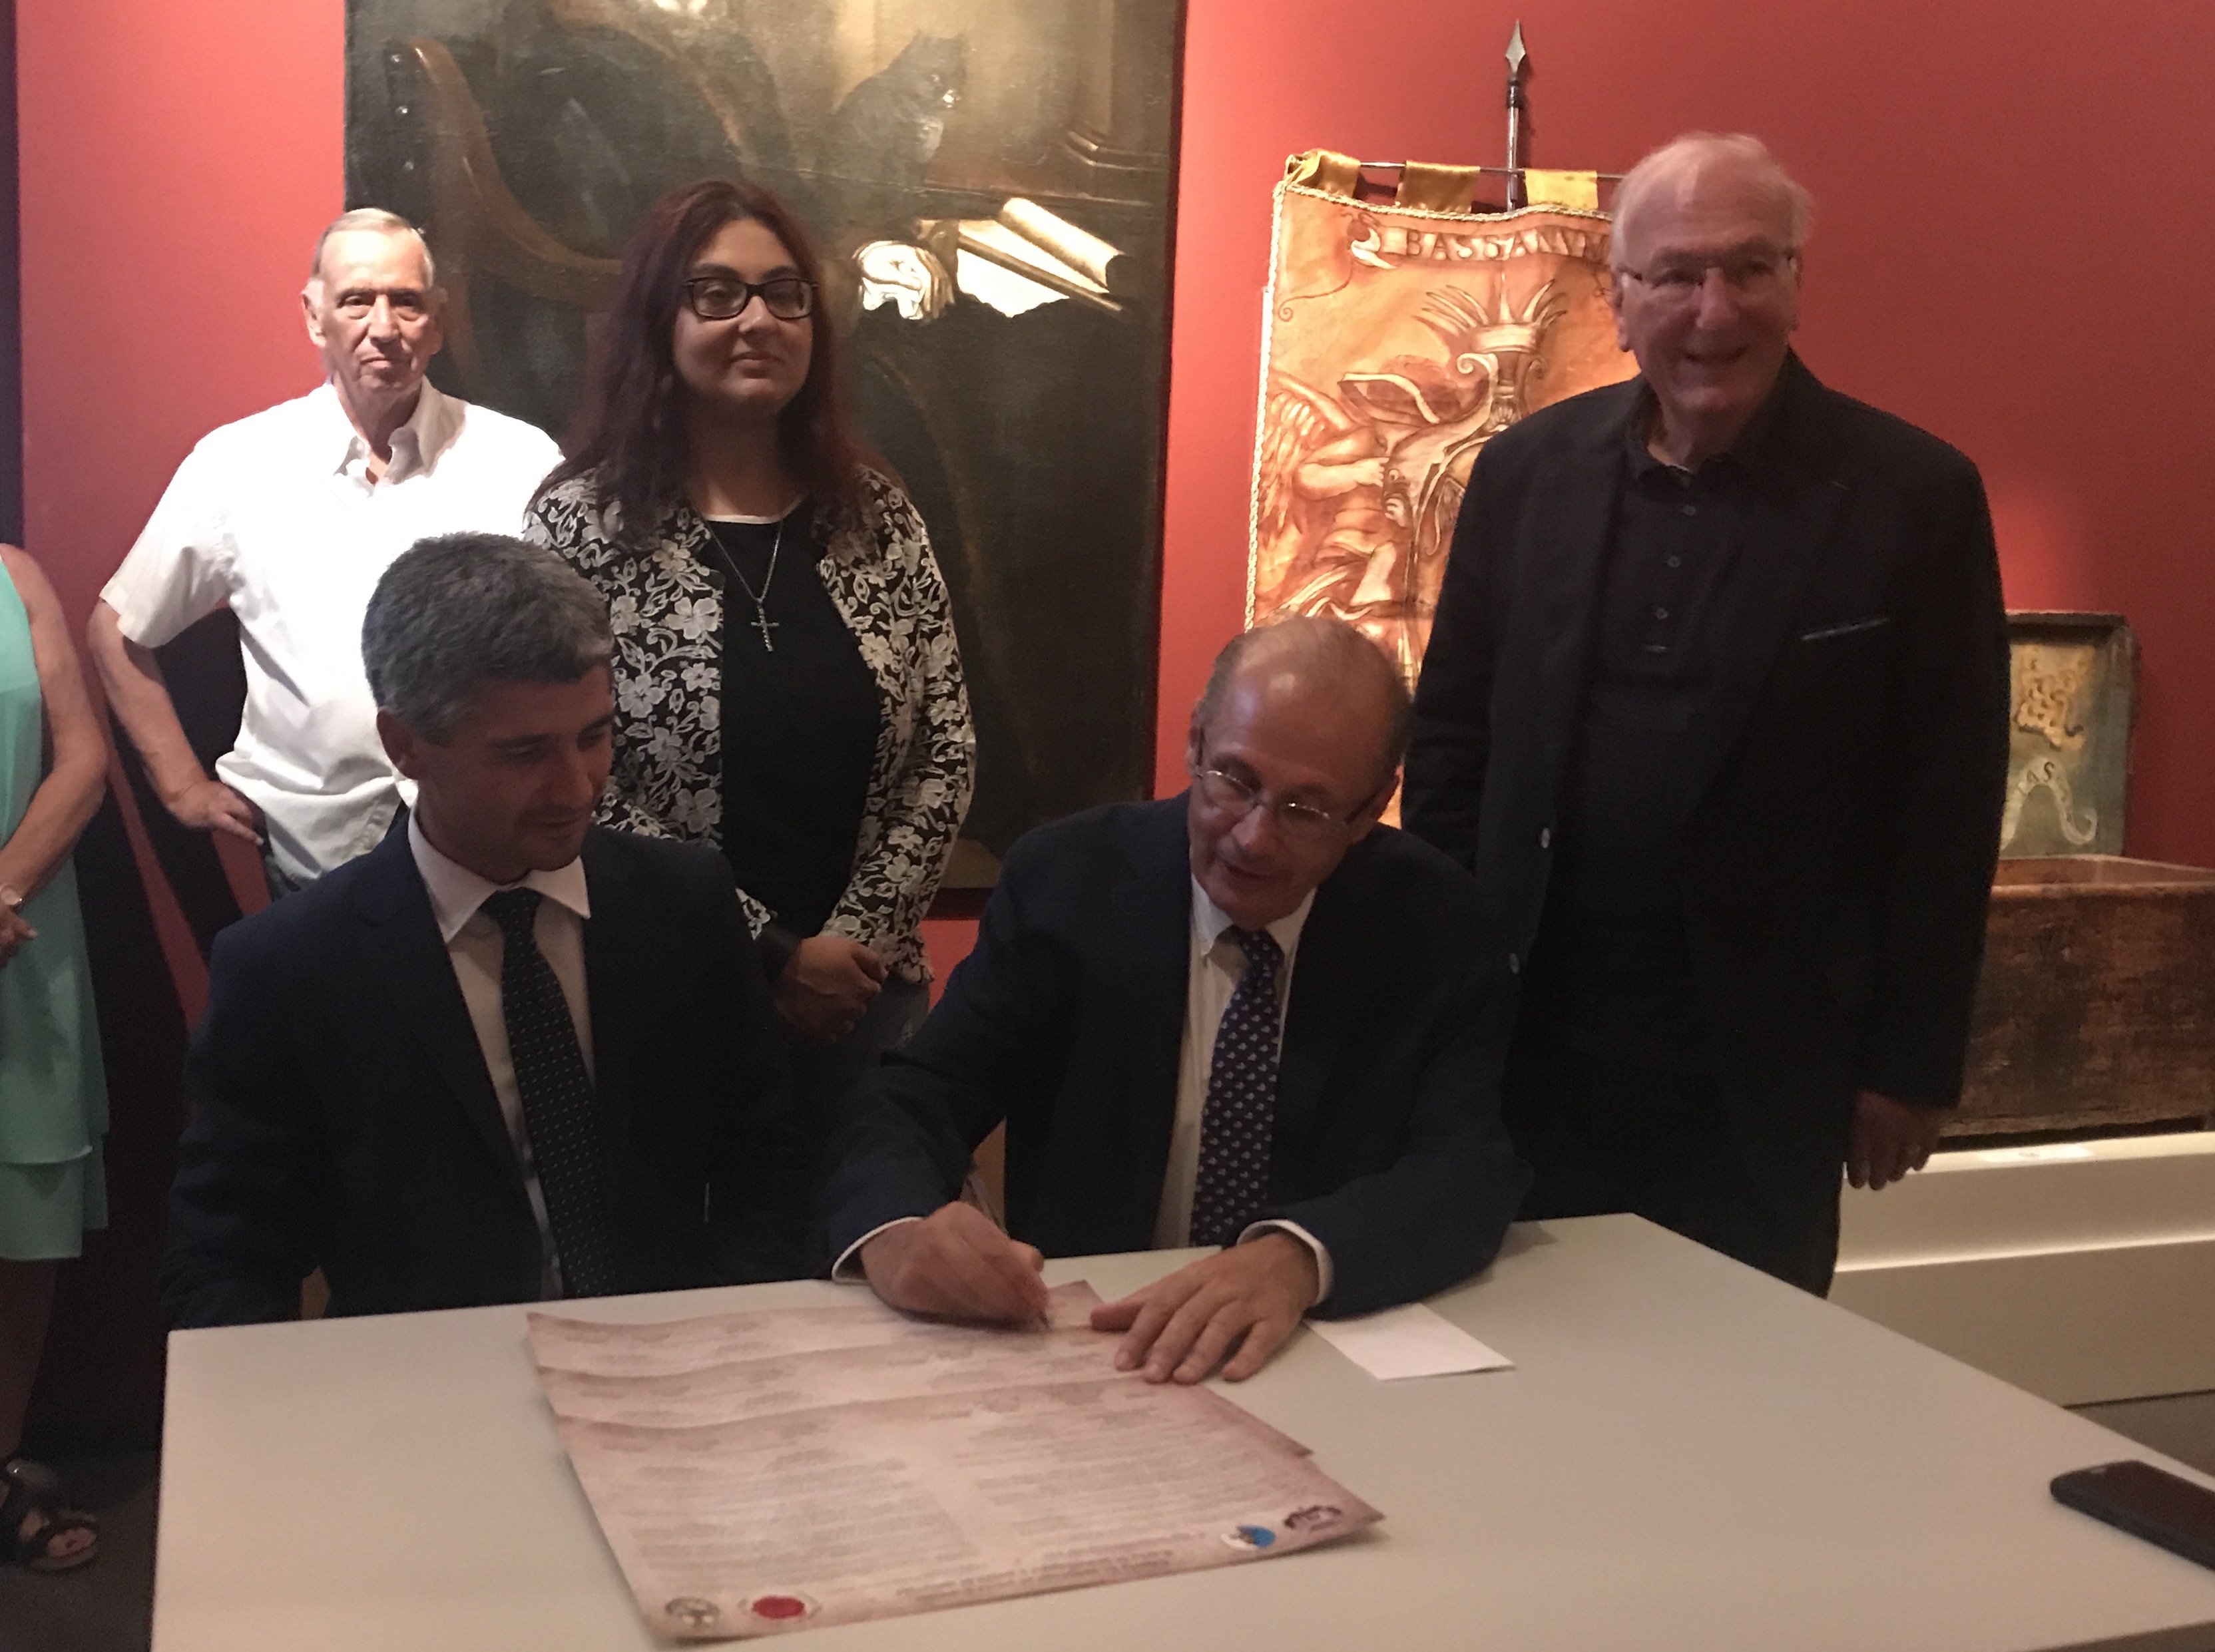 Bastia : L'association du comité du patrimoine signe une charte de jumelage avec l'Italie